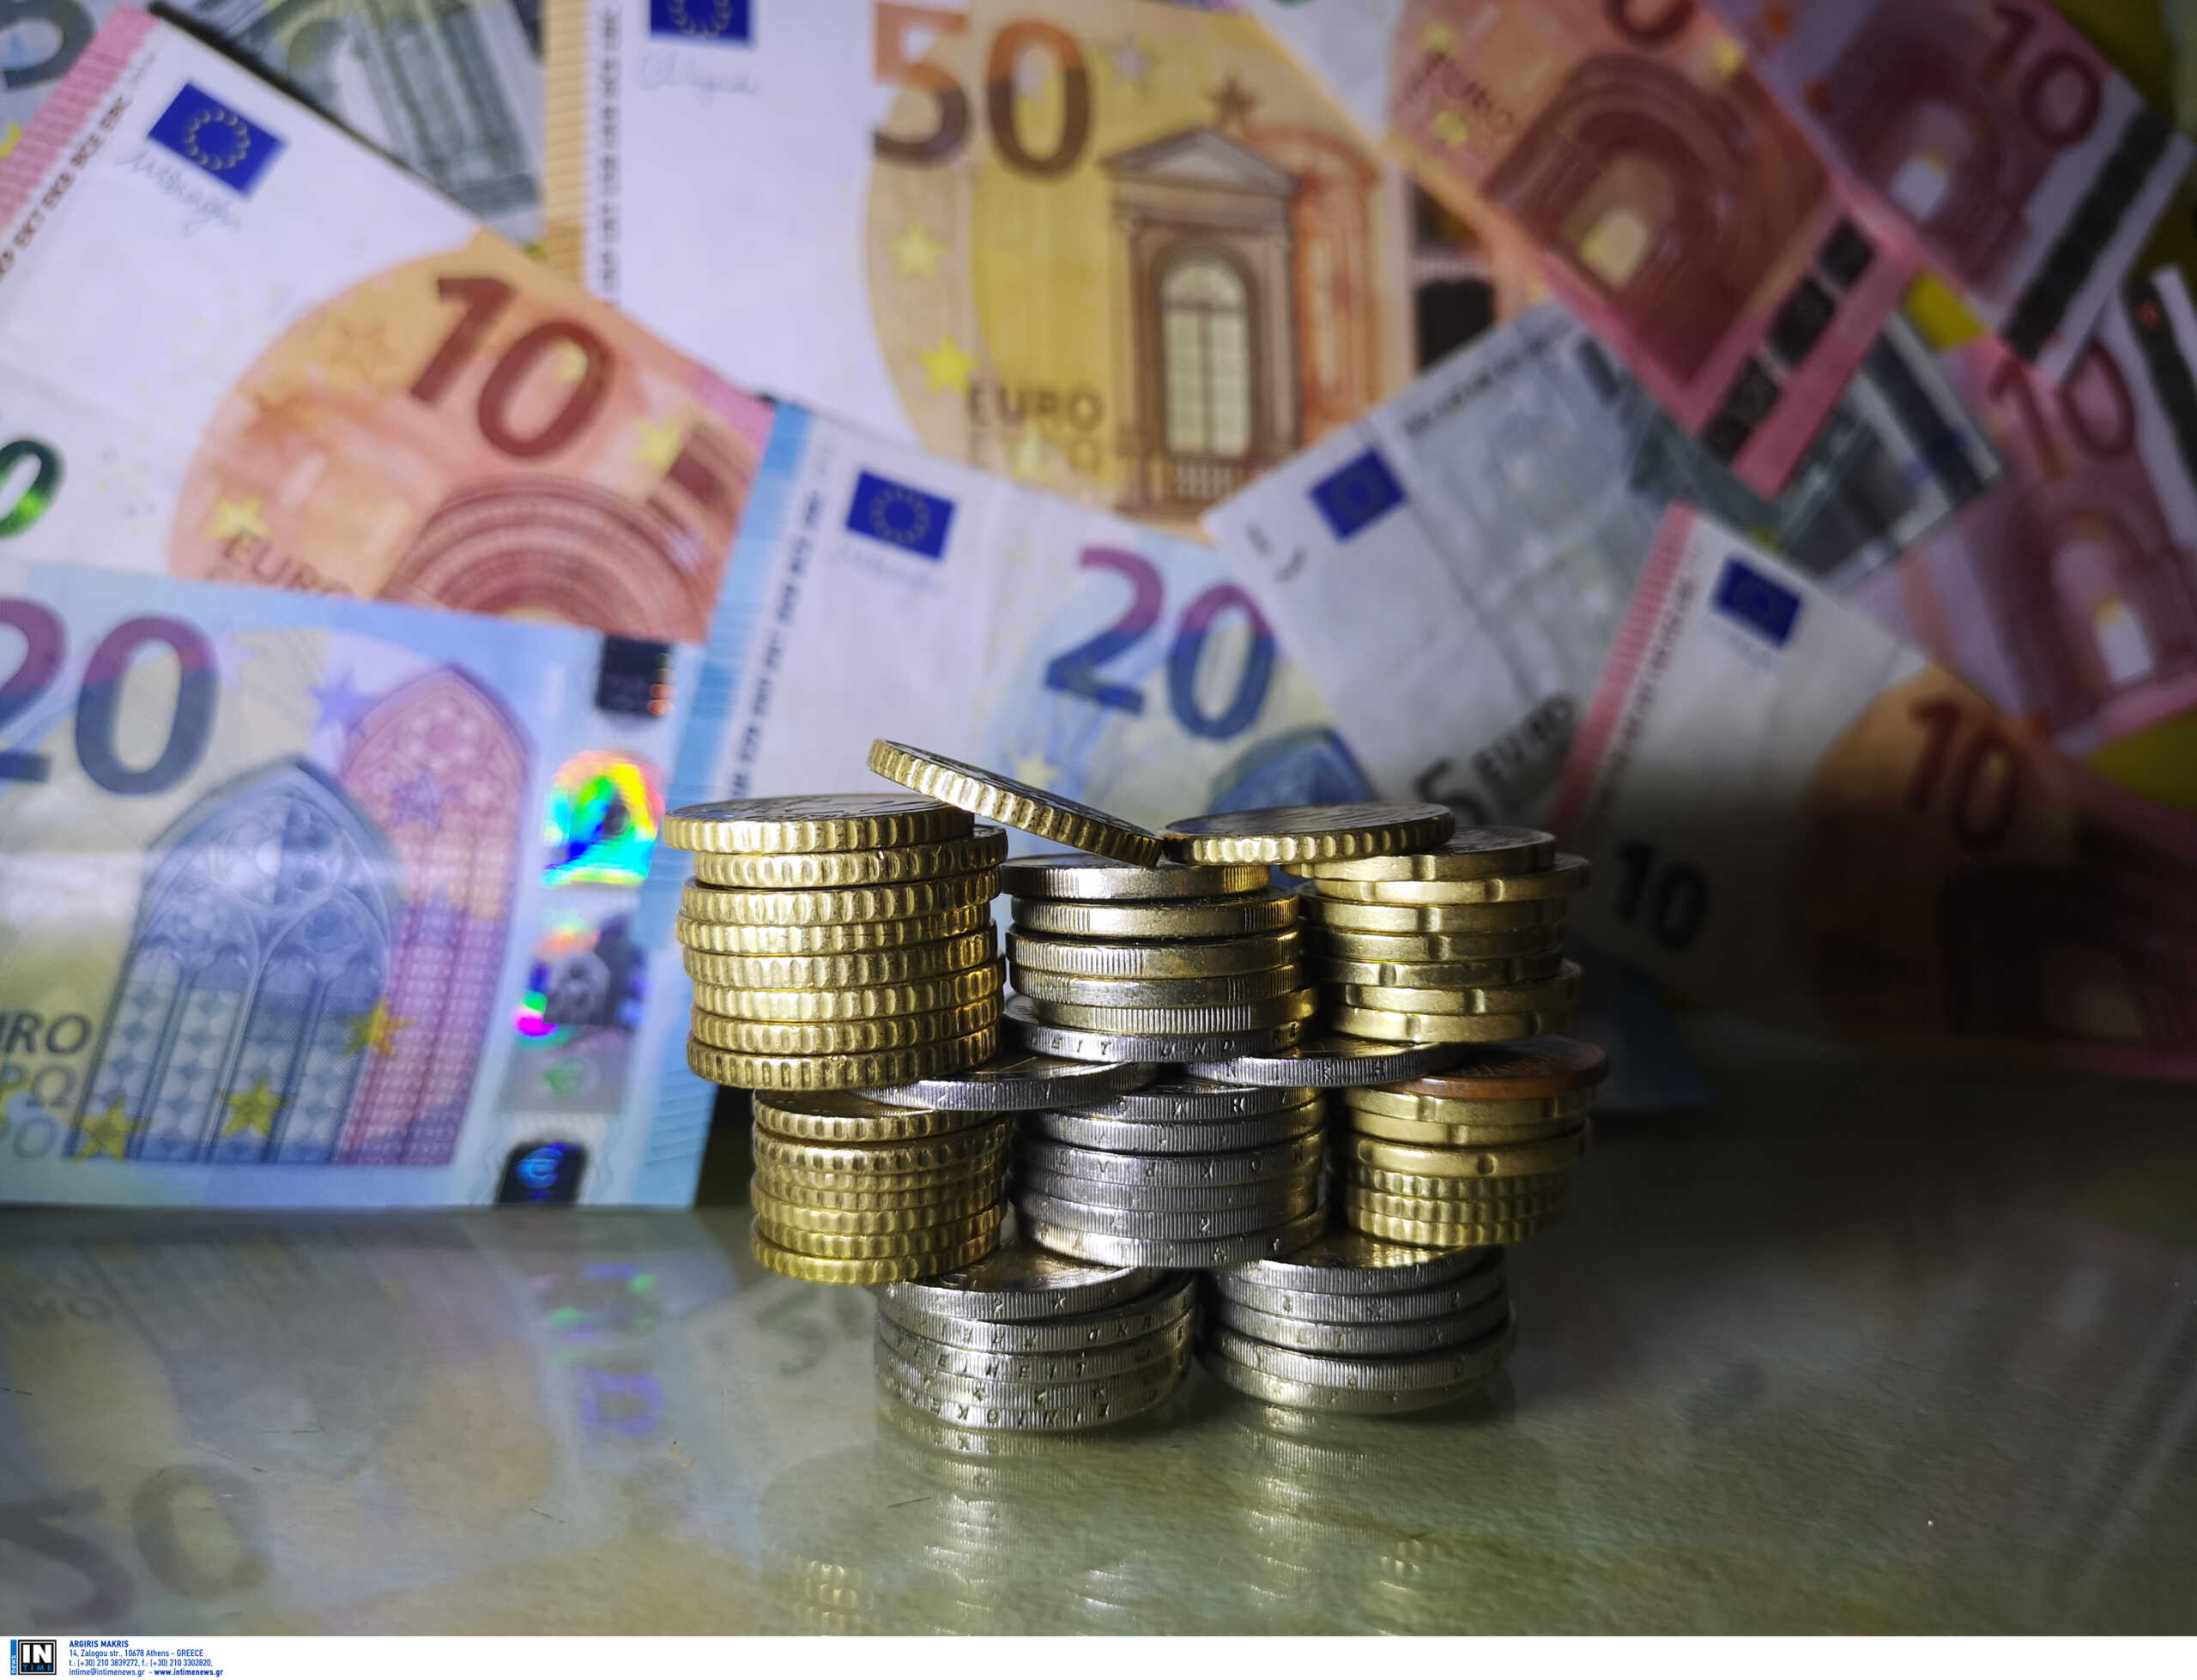 Τράπεζες: Αυξήθηκαν οι καταθέσεις κατά 439 εκατομμύρια ευρώ, μειώθηκαν τα δάνεια τον Αύγουστο, ανακοίνωσε η ΤτΕ